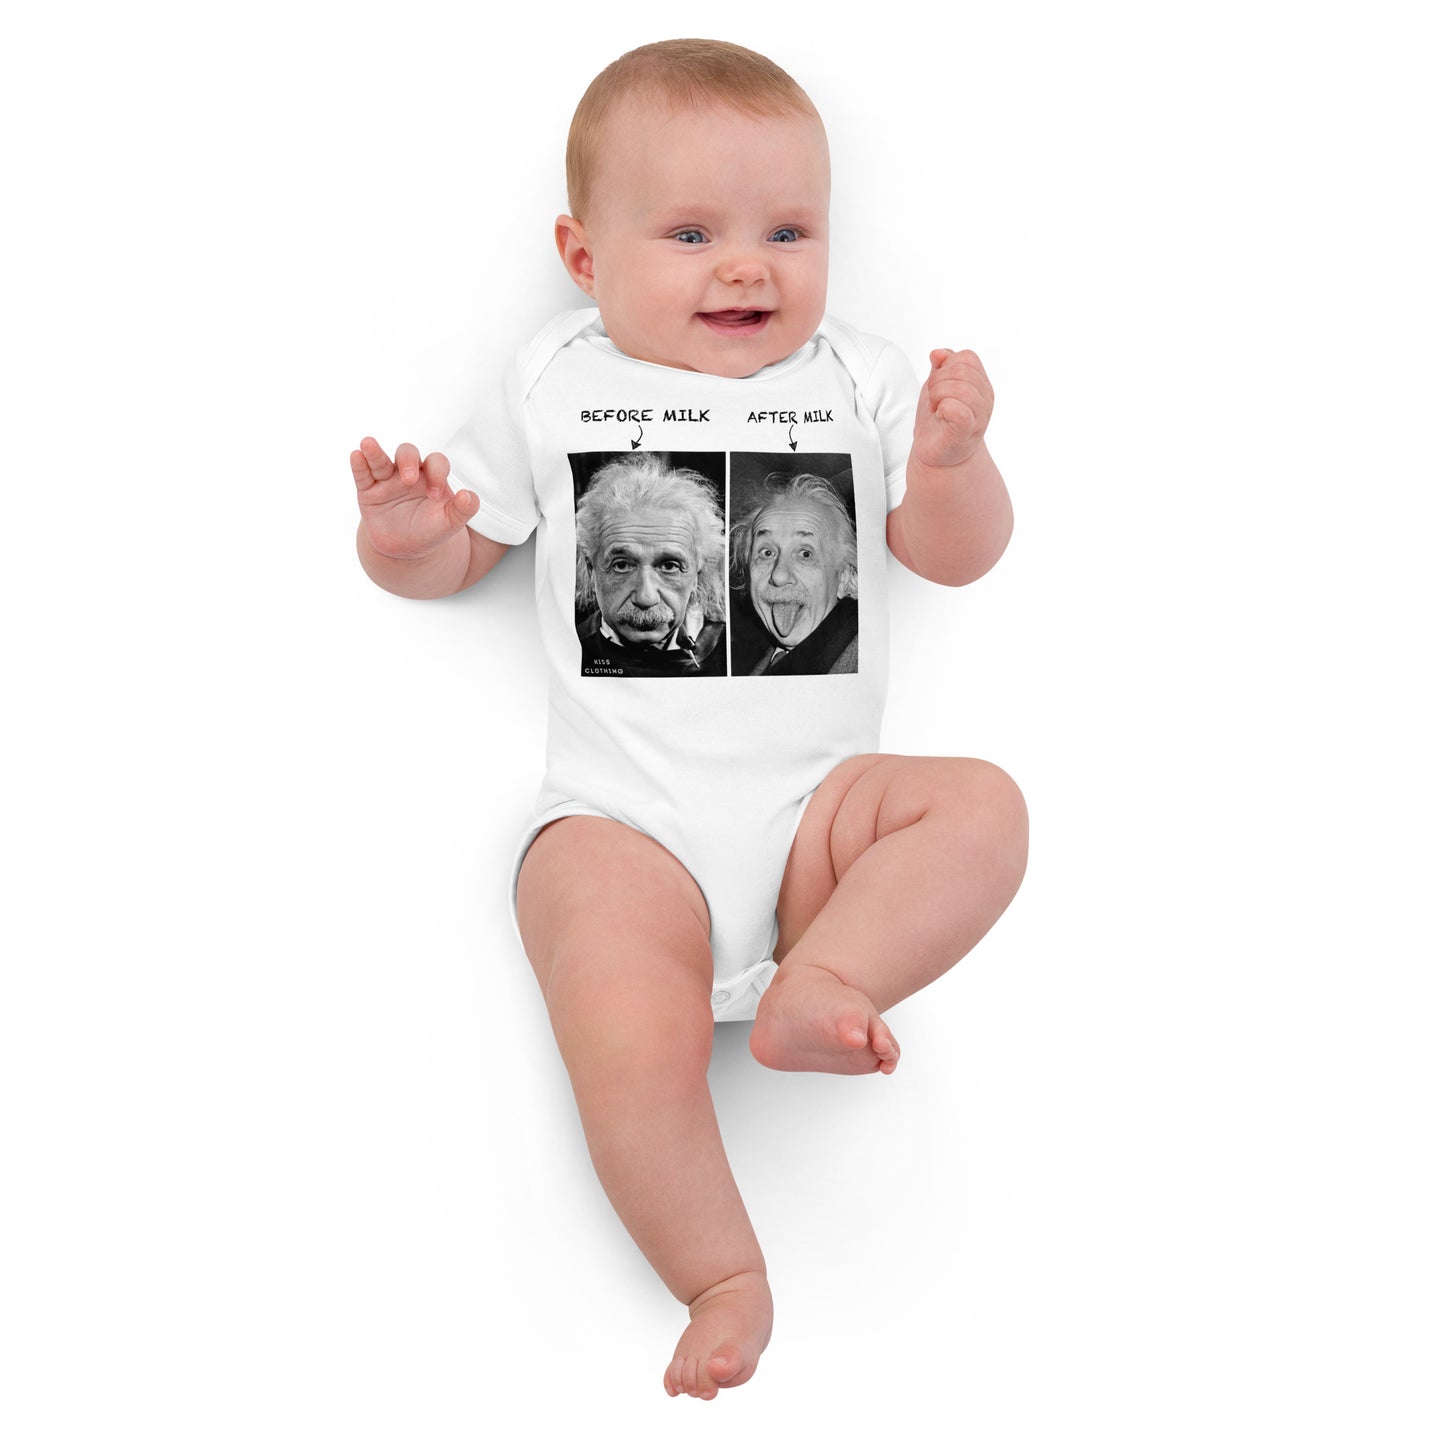 Einstein Milk KiSS Organic cotton baby bodysuit - Before Milk After Milk